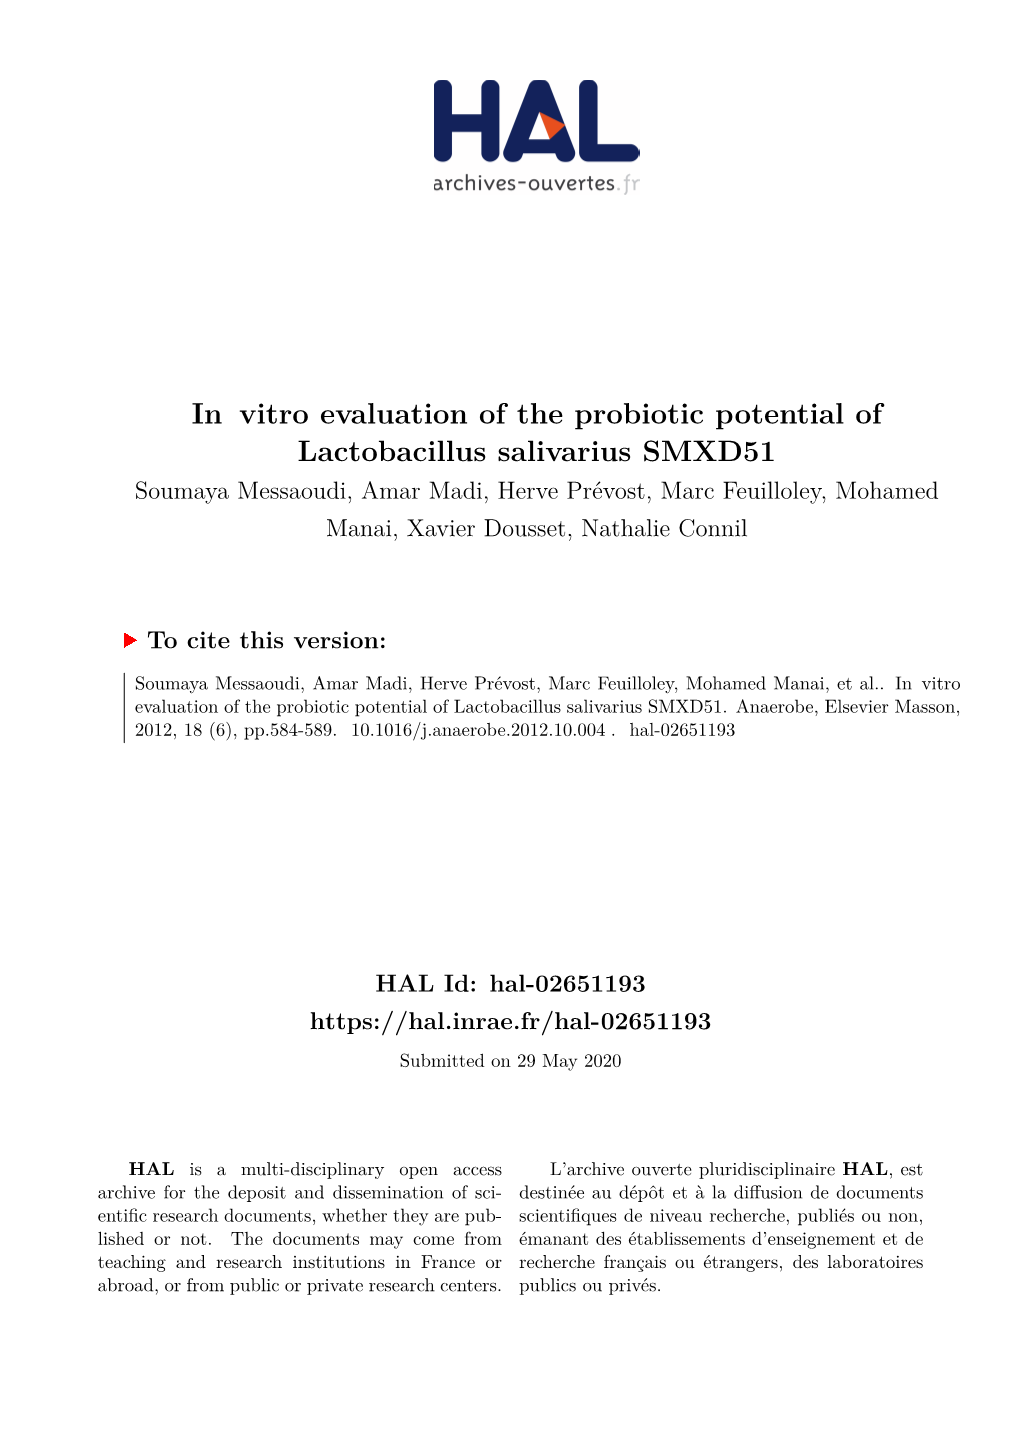 In Vitro Evaluation of the Probiotic Potential of Lactobacillus Salivarius